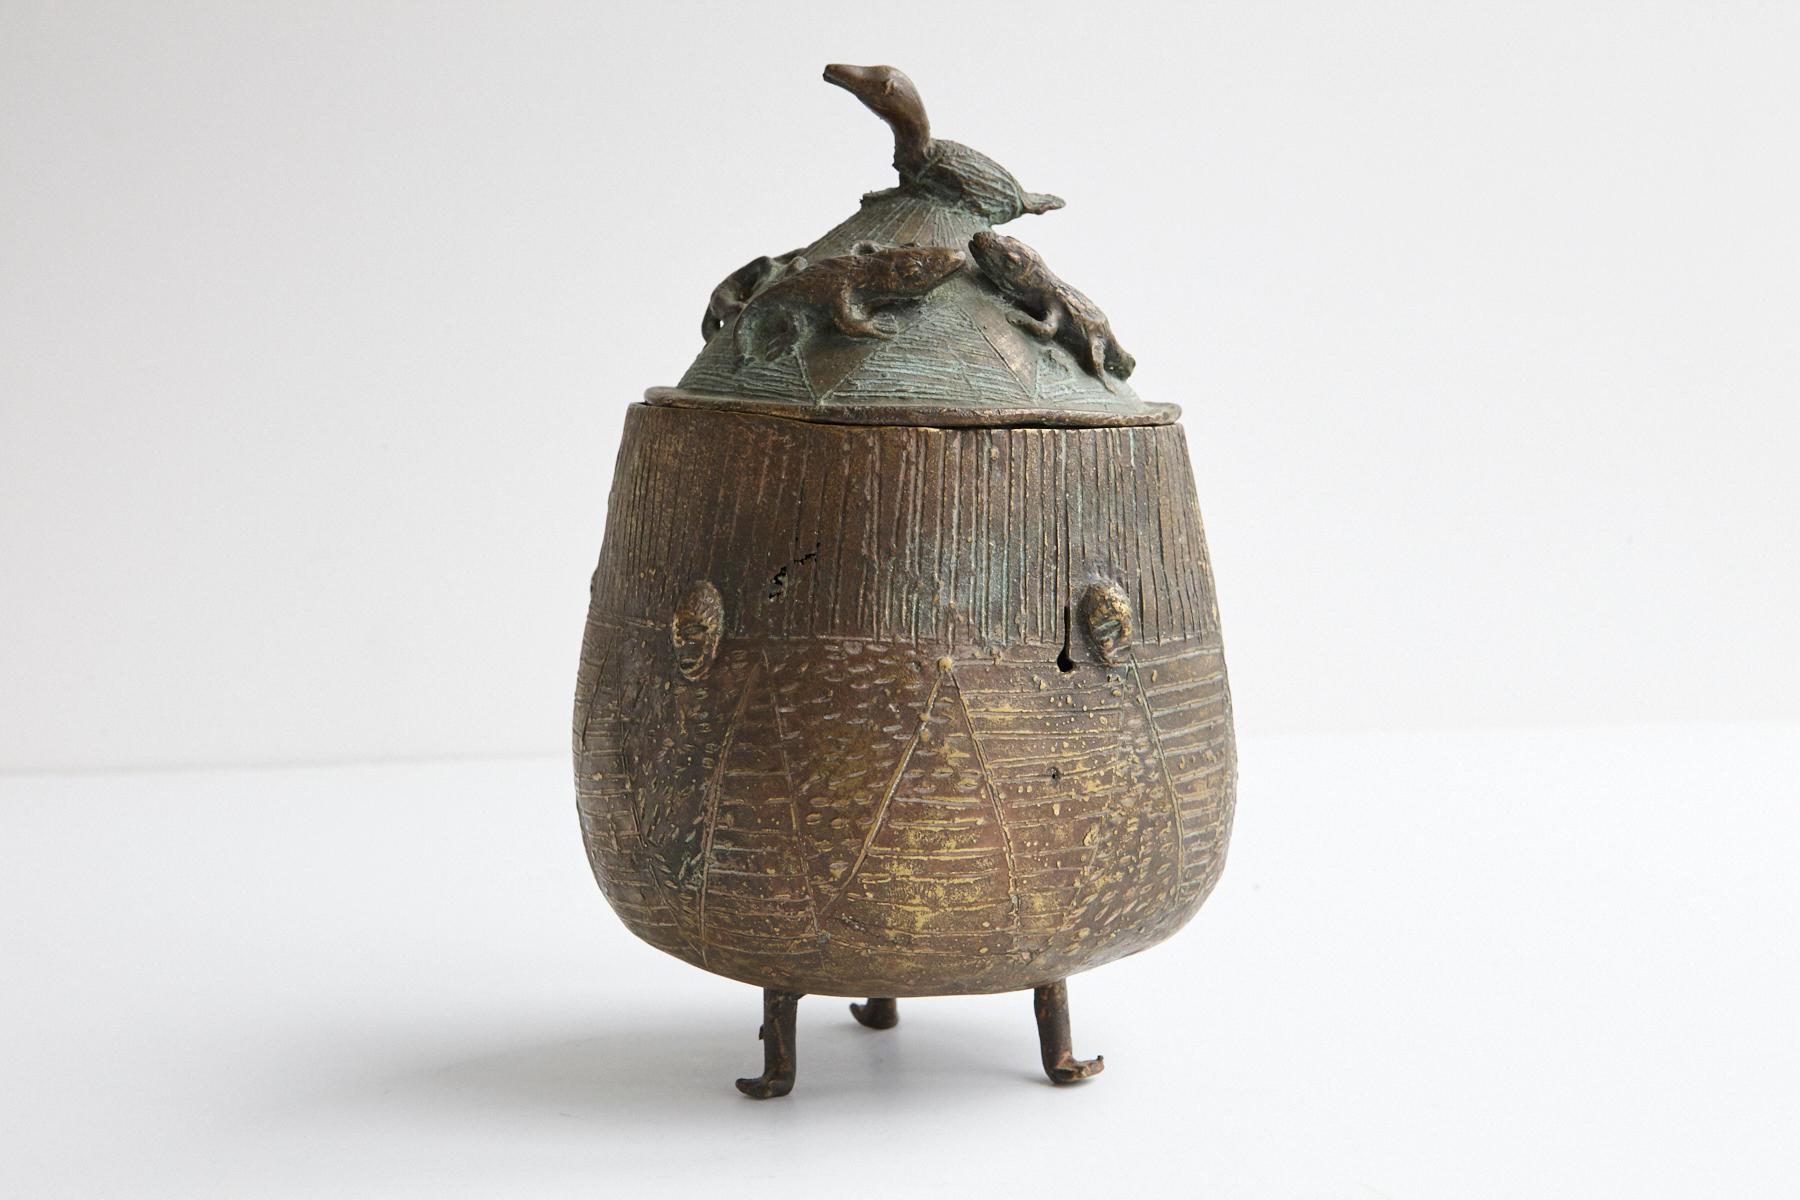 Magnifique récipient en bronze, pot à couvercle sur trois pieds, fabriqué par le peuple Asante, Ghana. Couvercle joliment moulé avec 4 reptiles et un oiseau. Plusieurs visages sont représentés sur le flanc du navire.
Les 